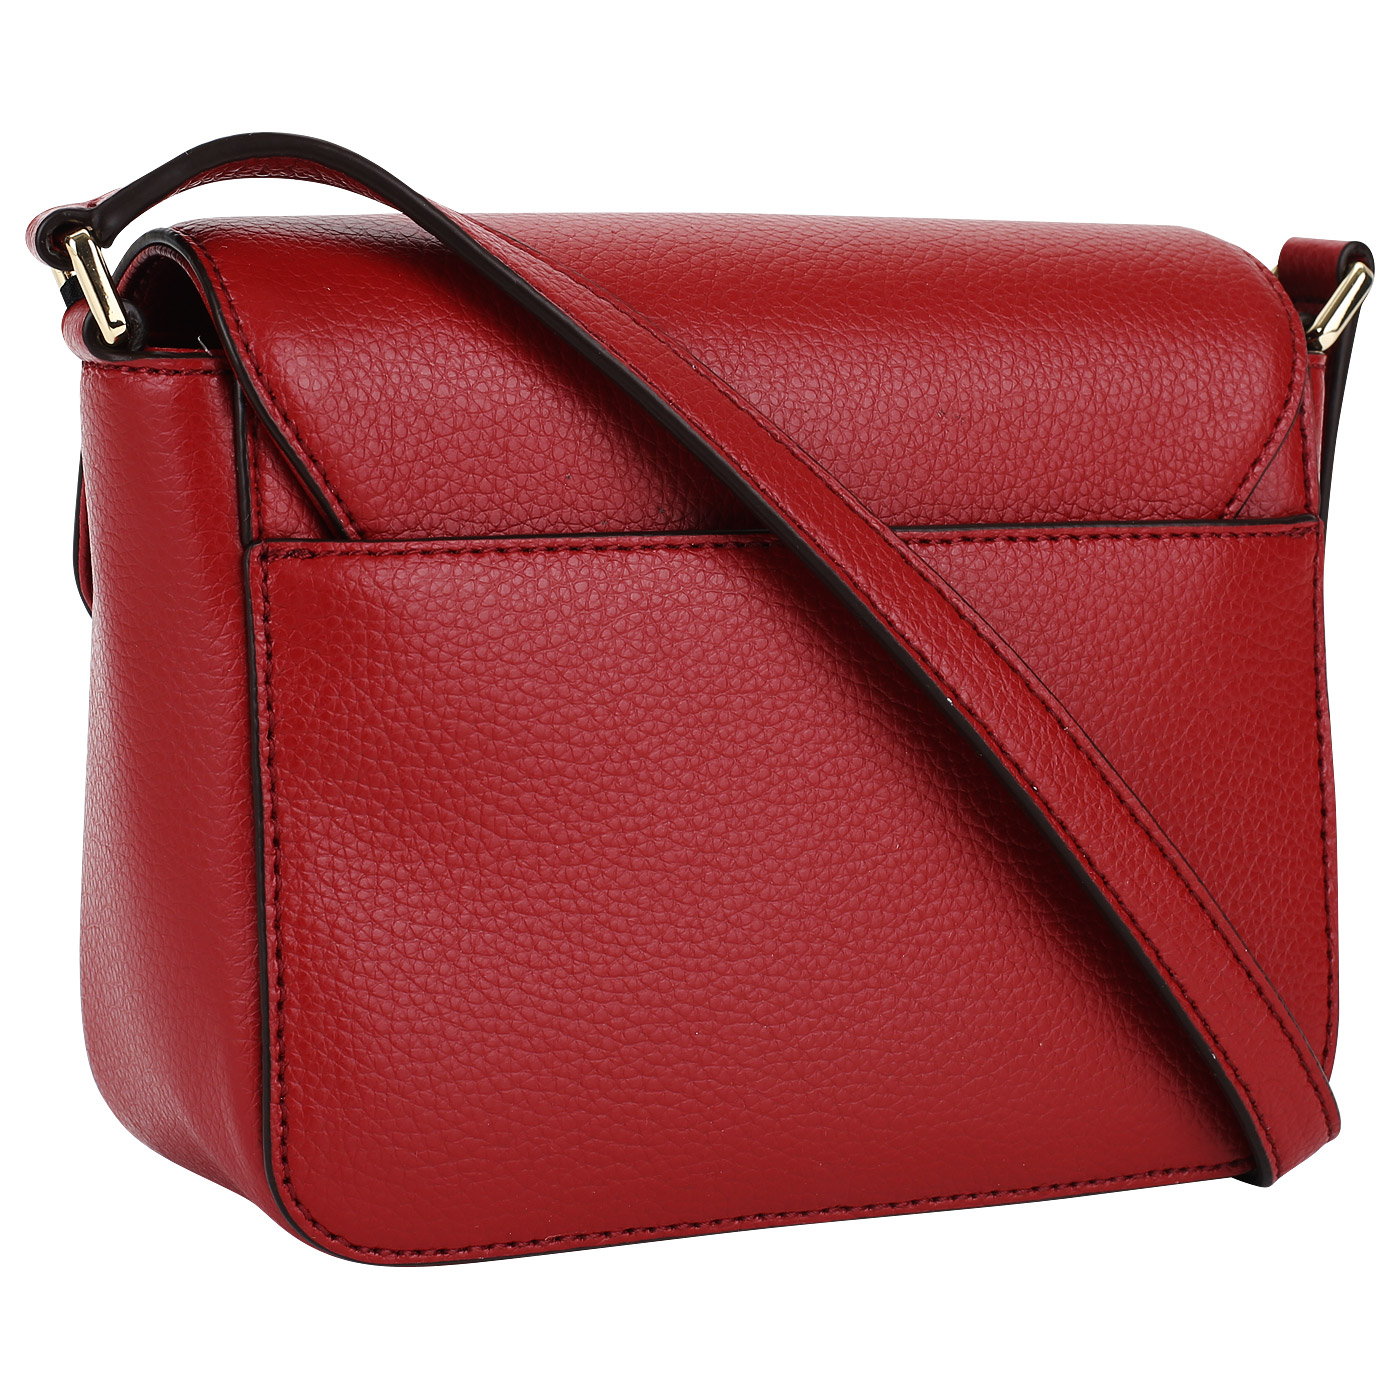 Красная кожаная сумочка DKNY Elissa